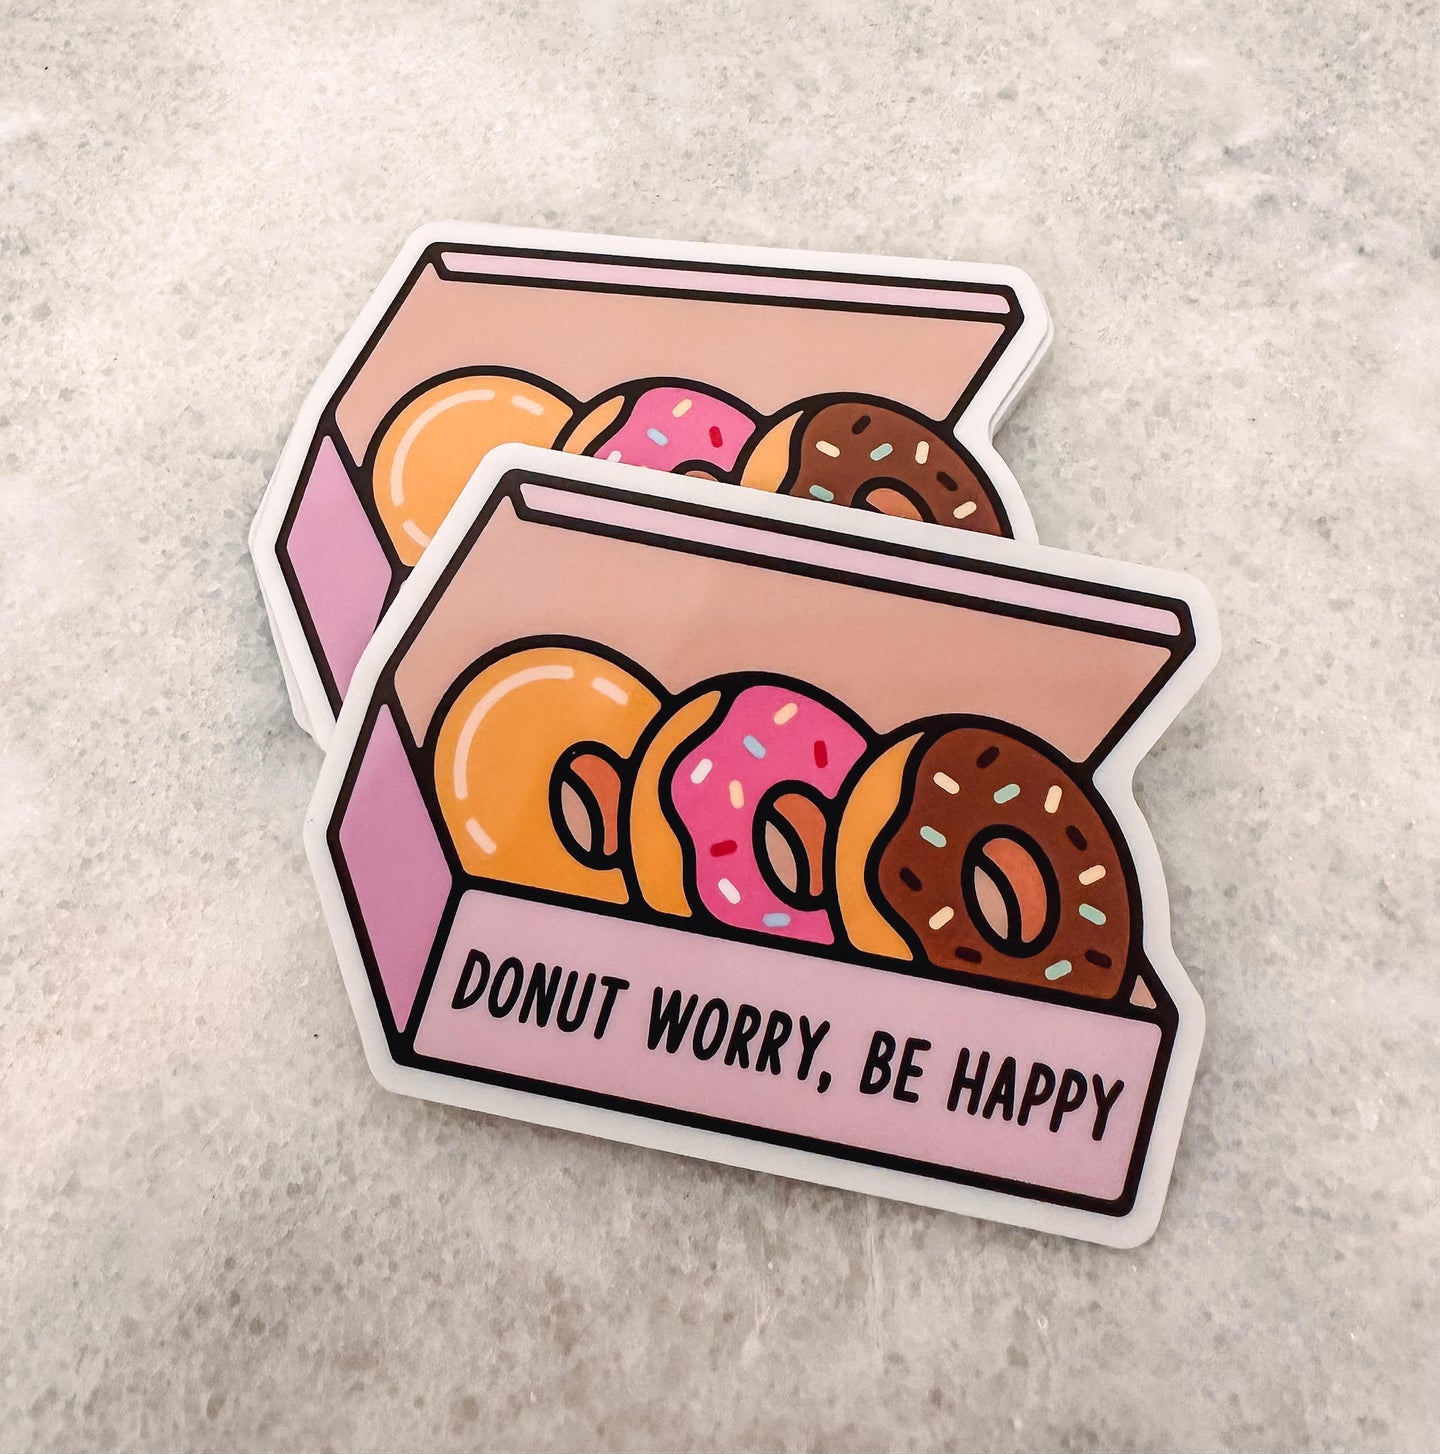 Donut Worry Be Happy Donut Box Sticker